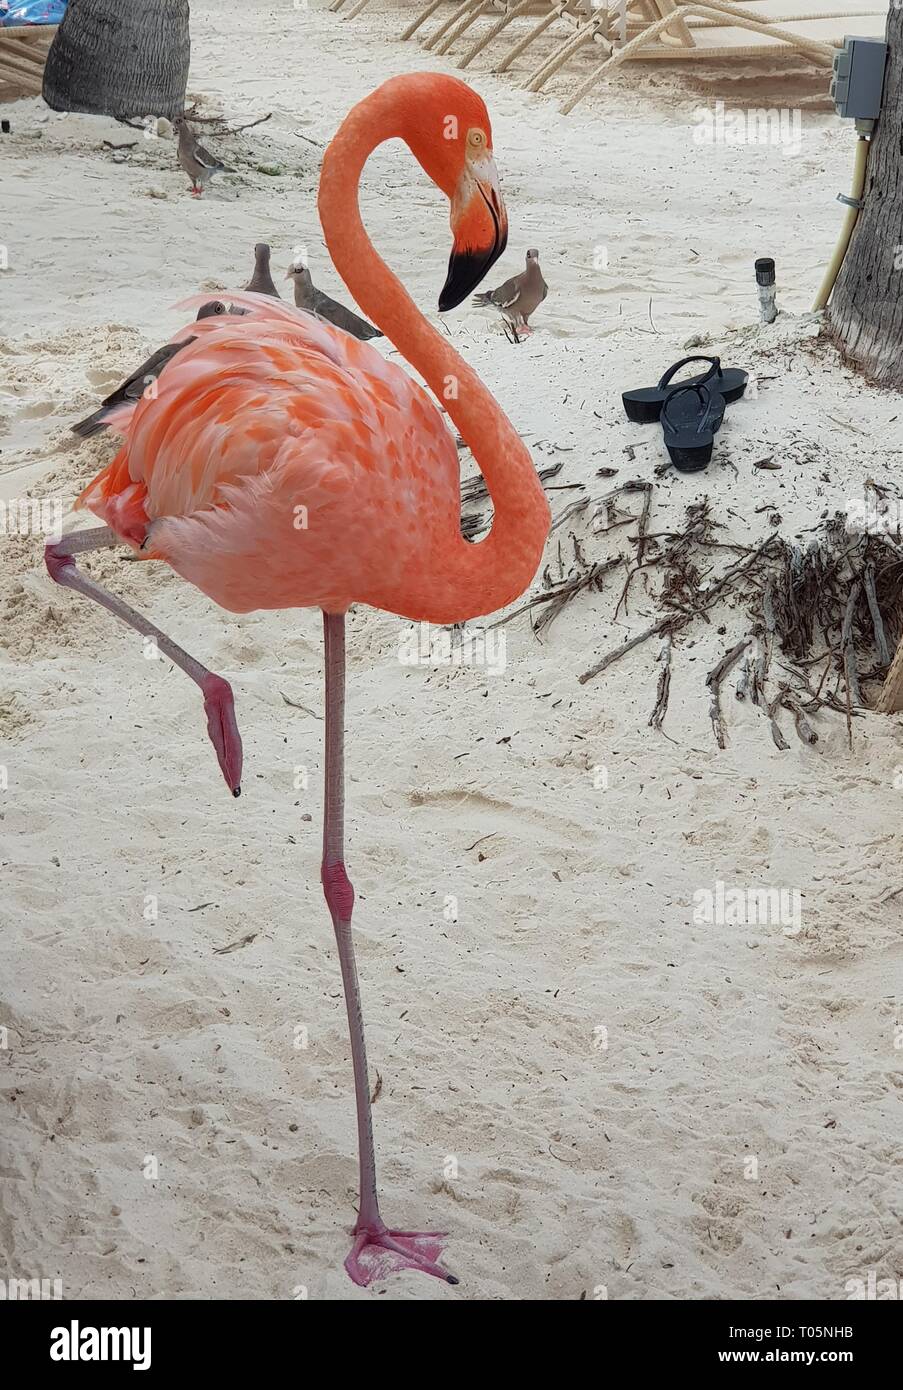 Big fat flamingo on the beach in Aruba Stock Photo